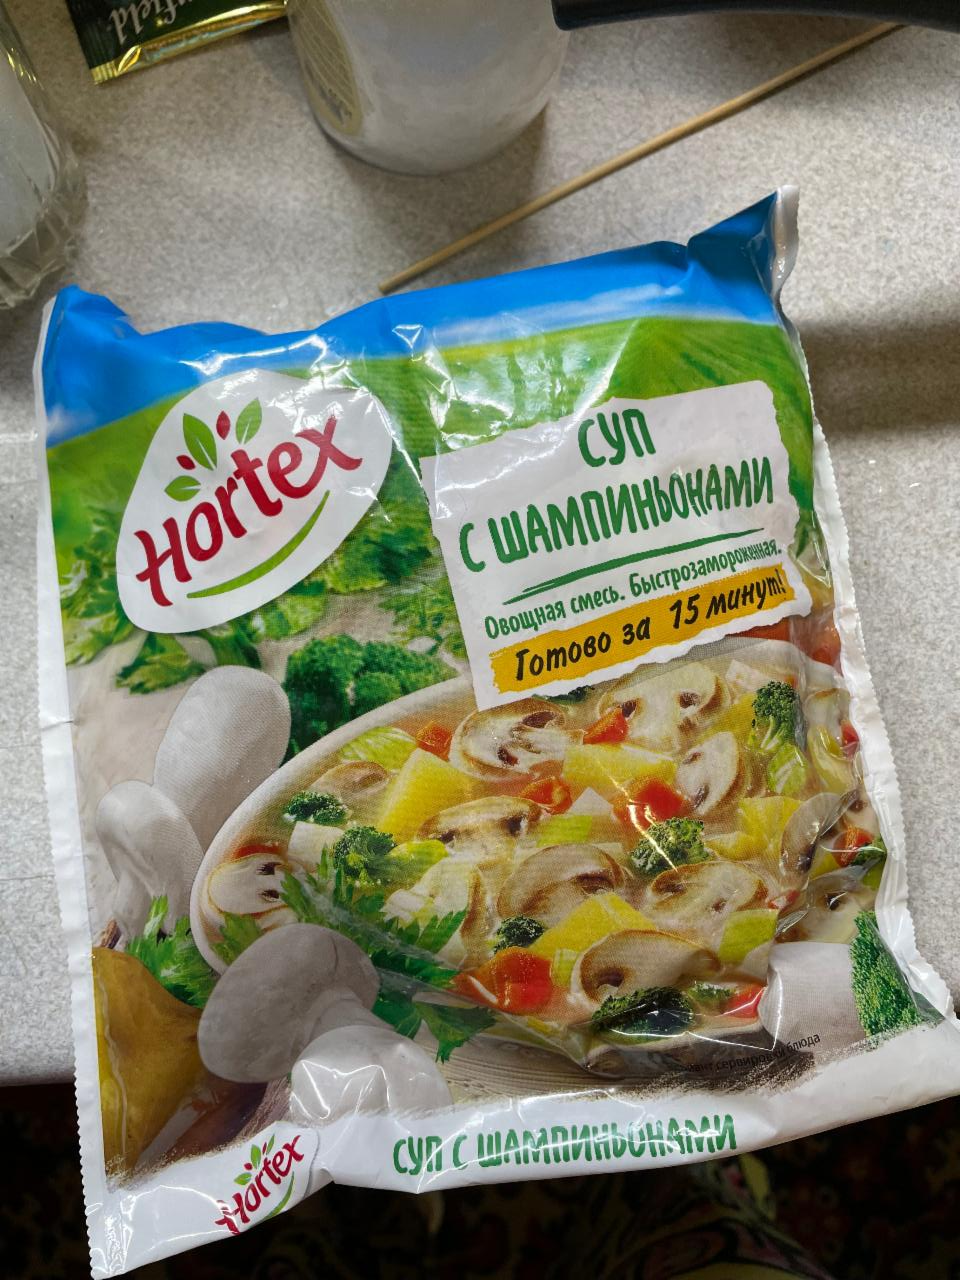 Фото - замороженая смесь суп с шампиньонами Hortex